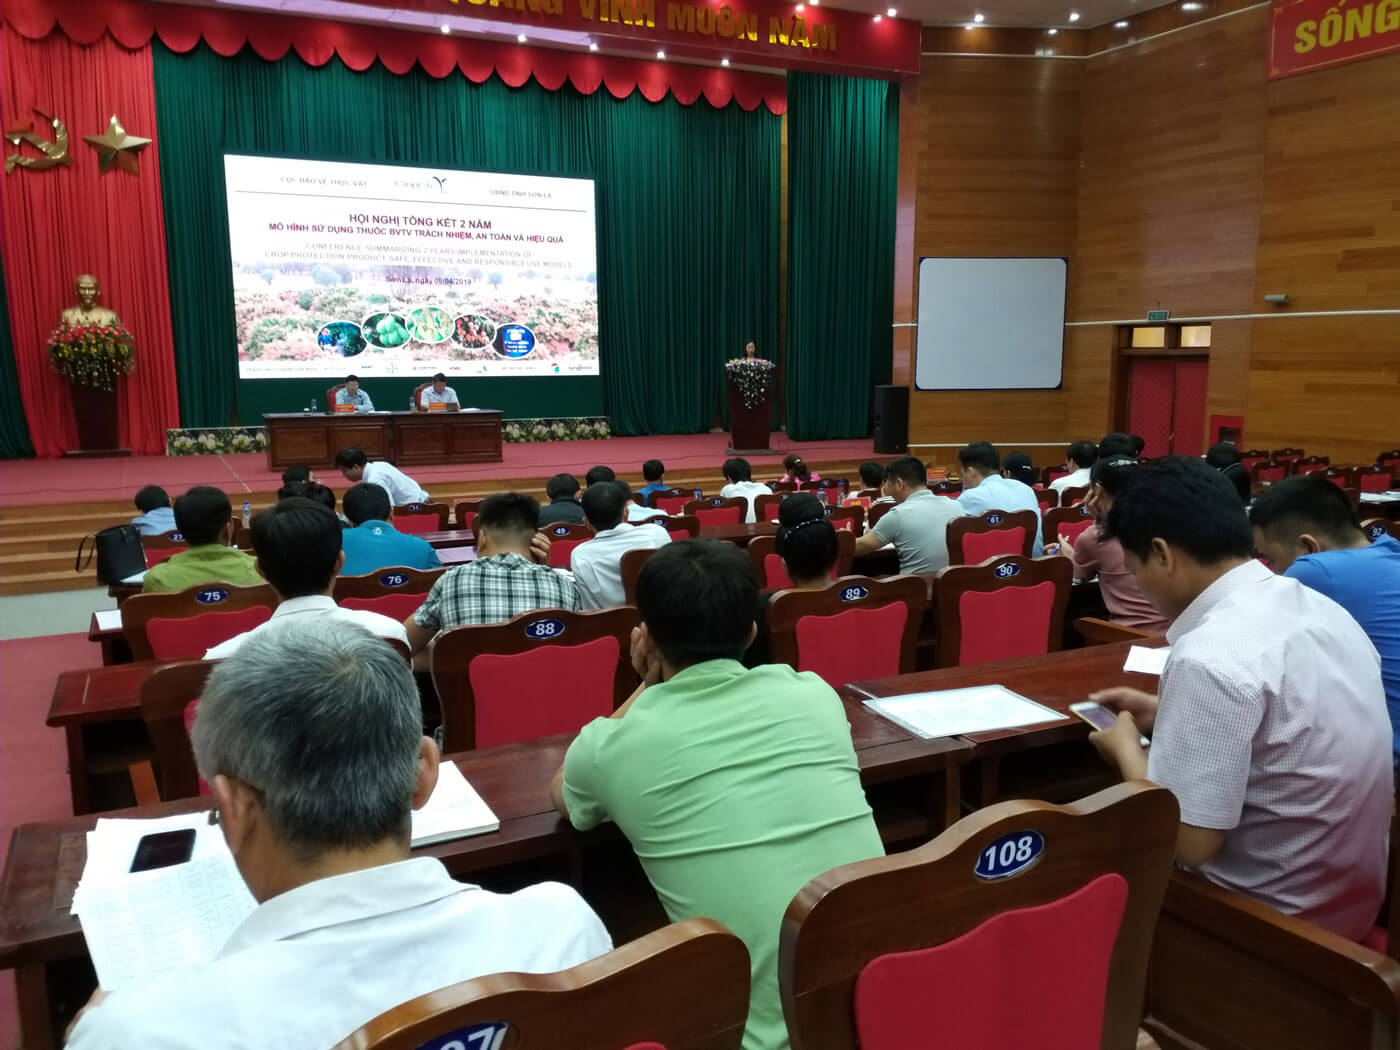 Đông đảo đại biểu tham dự Hội nghị Tổng kết 2 năm mô hình sử dụng thuốc BVTV trách nhiệm, an toàn và hiệu quả ở Sơn La  